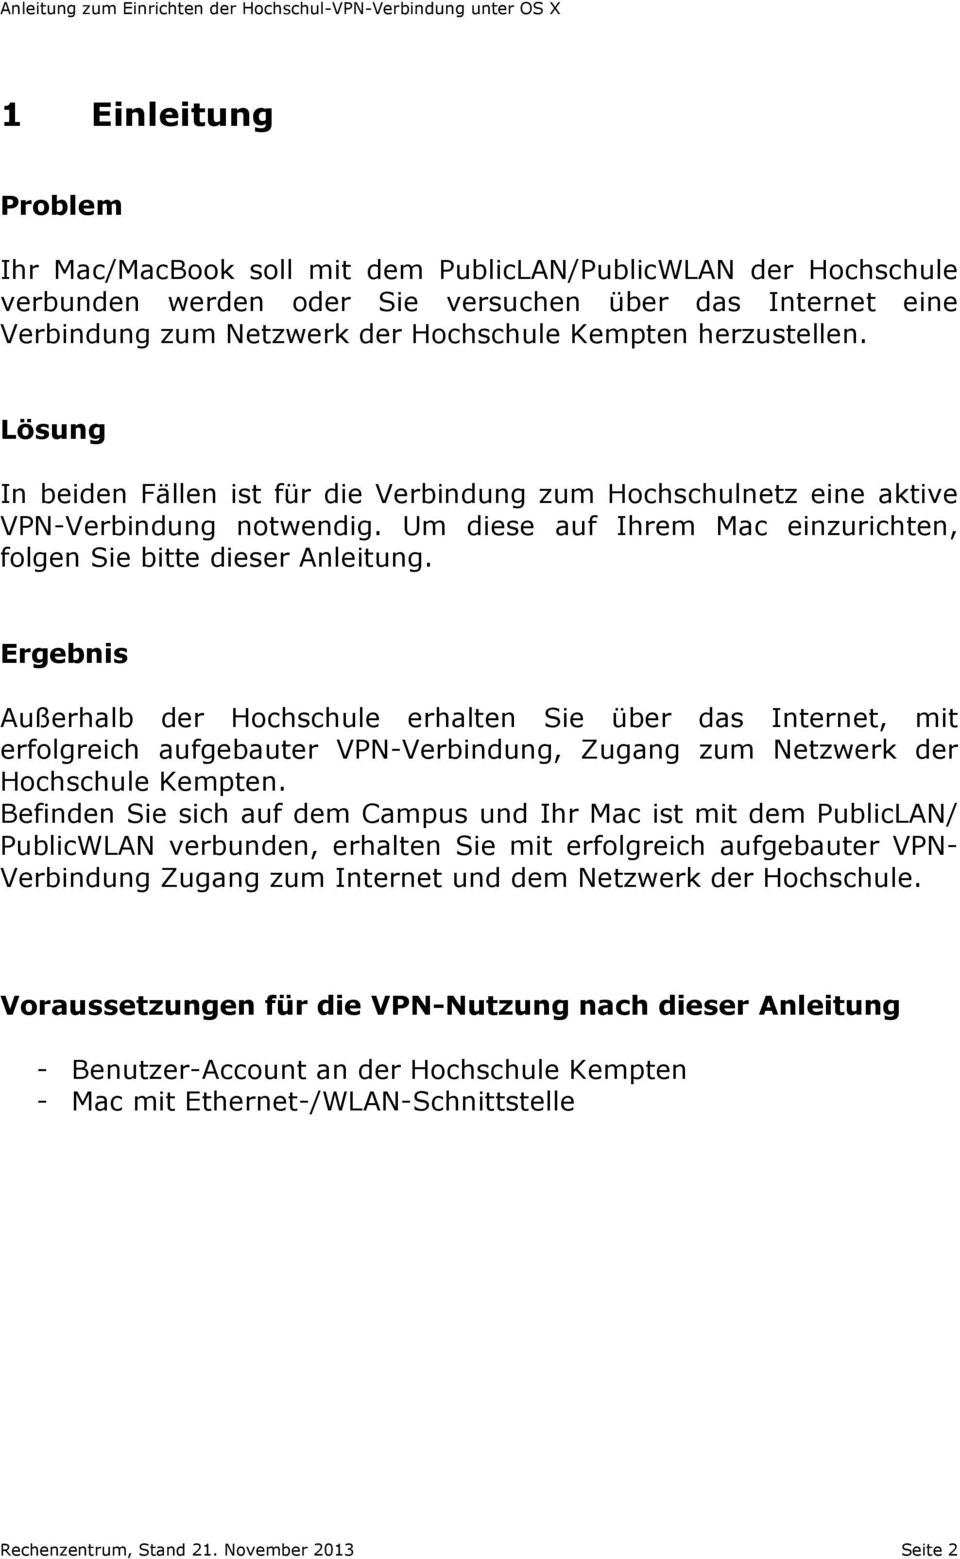 Ergebnis Außerhalb der Hochschule erhalten Sie über das Internet, mit erfolgreich aufgebauter VPN-Verbindung, Zugang zum Netzwerk der Hochschule Kempten.